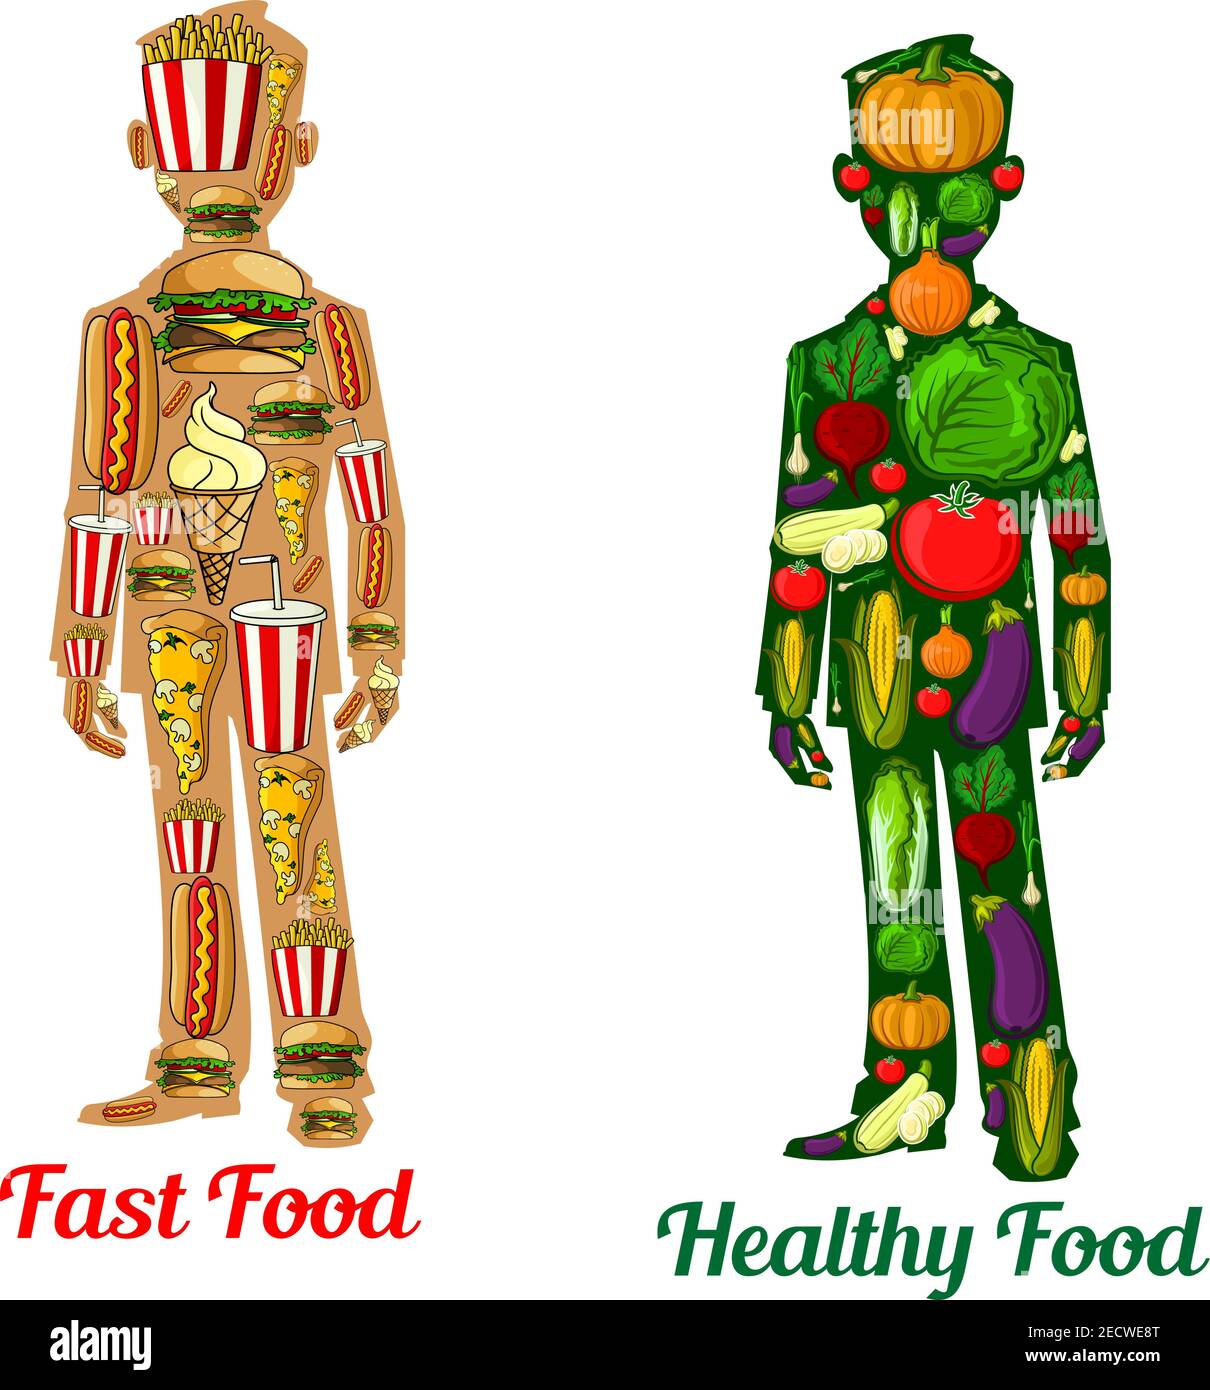 Gesunde Ernährung Ernährung vs Fast Food. Menschliche Körper Symbole mit Symbol für Gemüse Tomaten, Kartoffeln, Pfeffer, Rettich, Kohl, Kürbis, Mais, Zwiebel und Käse Stock Vektor